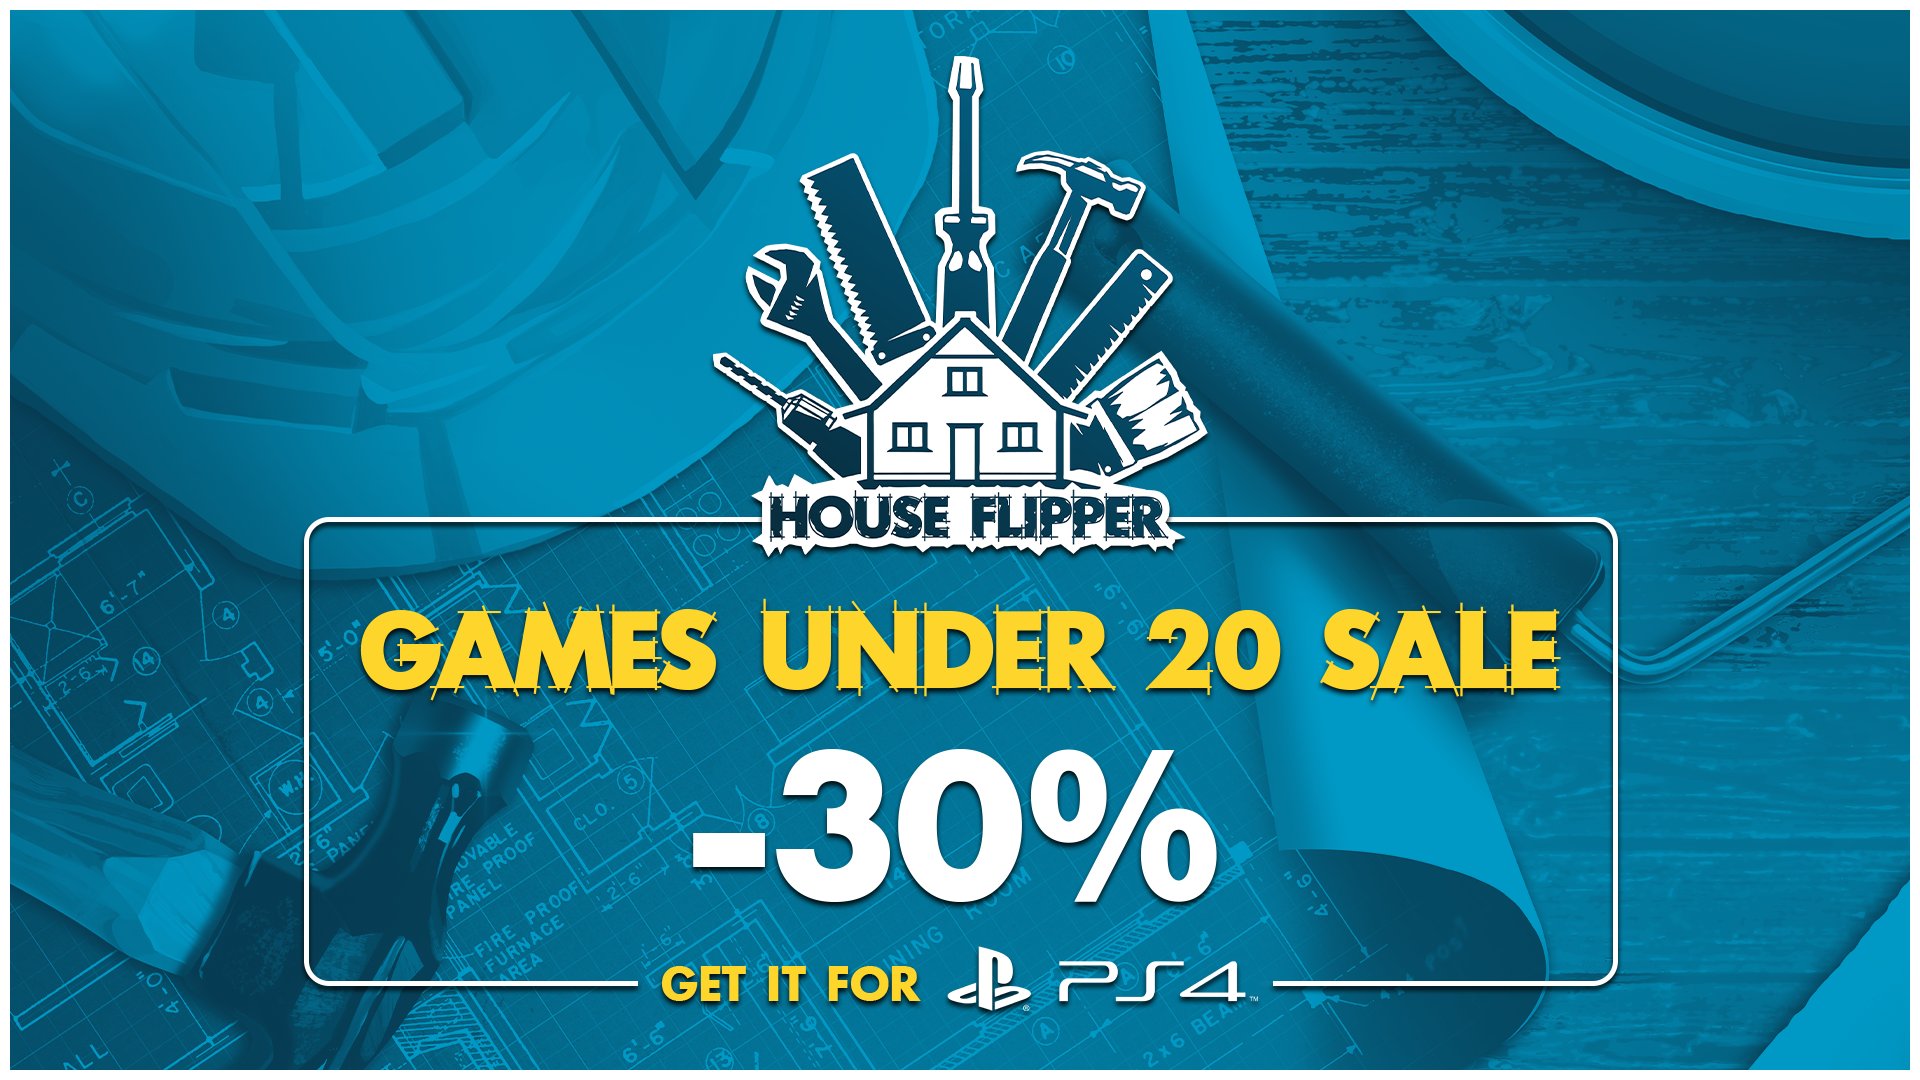 House Flipper on Twitter: "So we're all waiting the Garden Flipper, so not do a PS4 discount? https://t.co/DnBKucxJOq" /